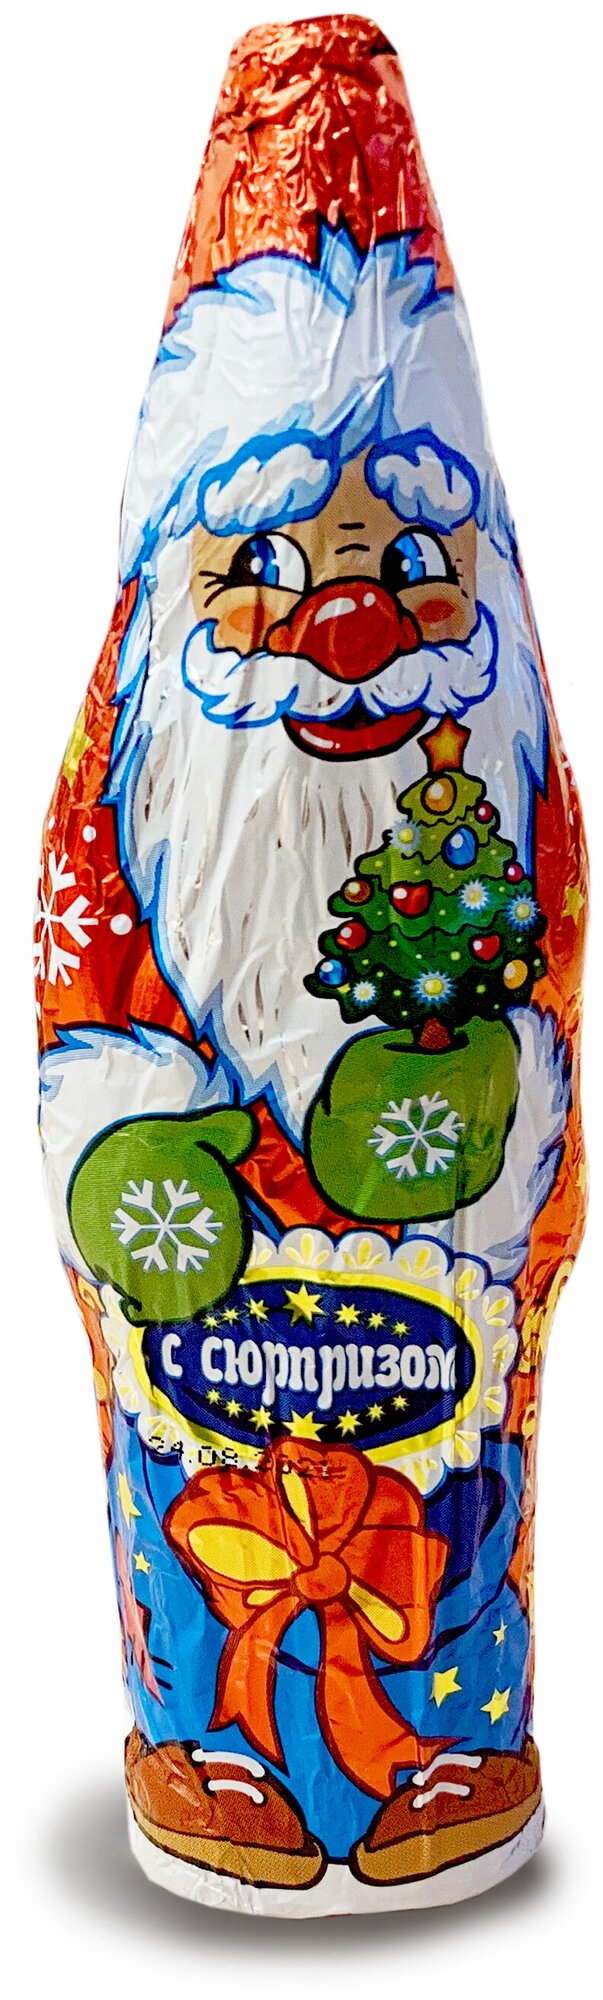 Шоколадная фигурка новогодняя "Дед Мороз" с сюрпризом 24 шт по 60 г - фотография № 7